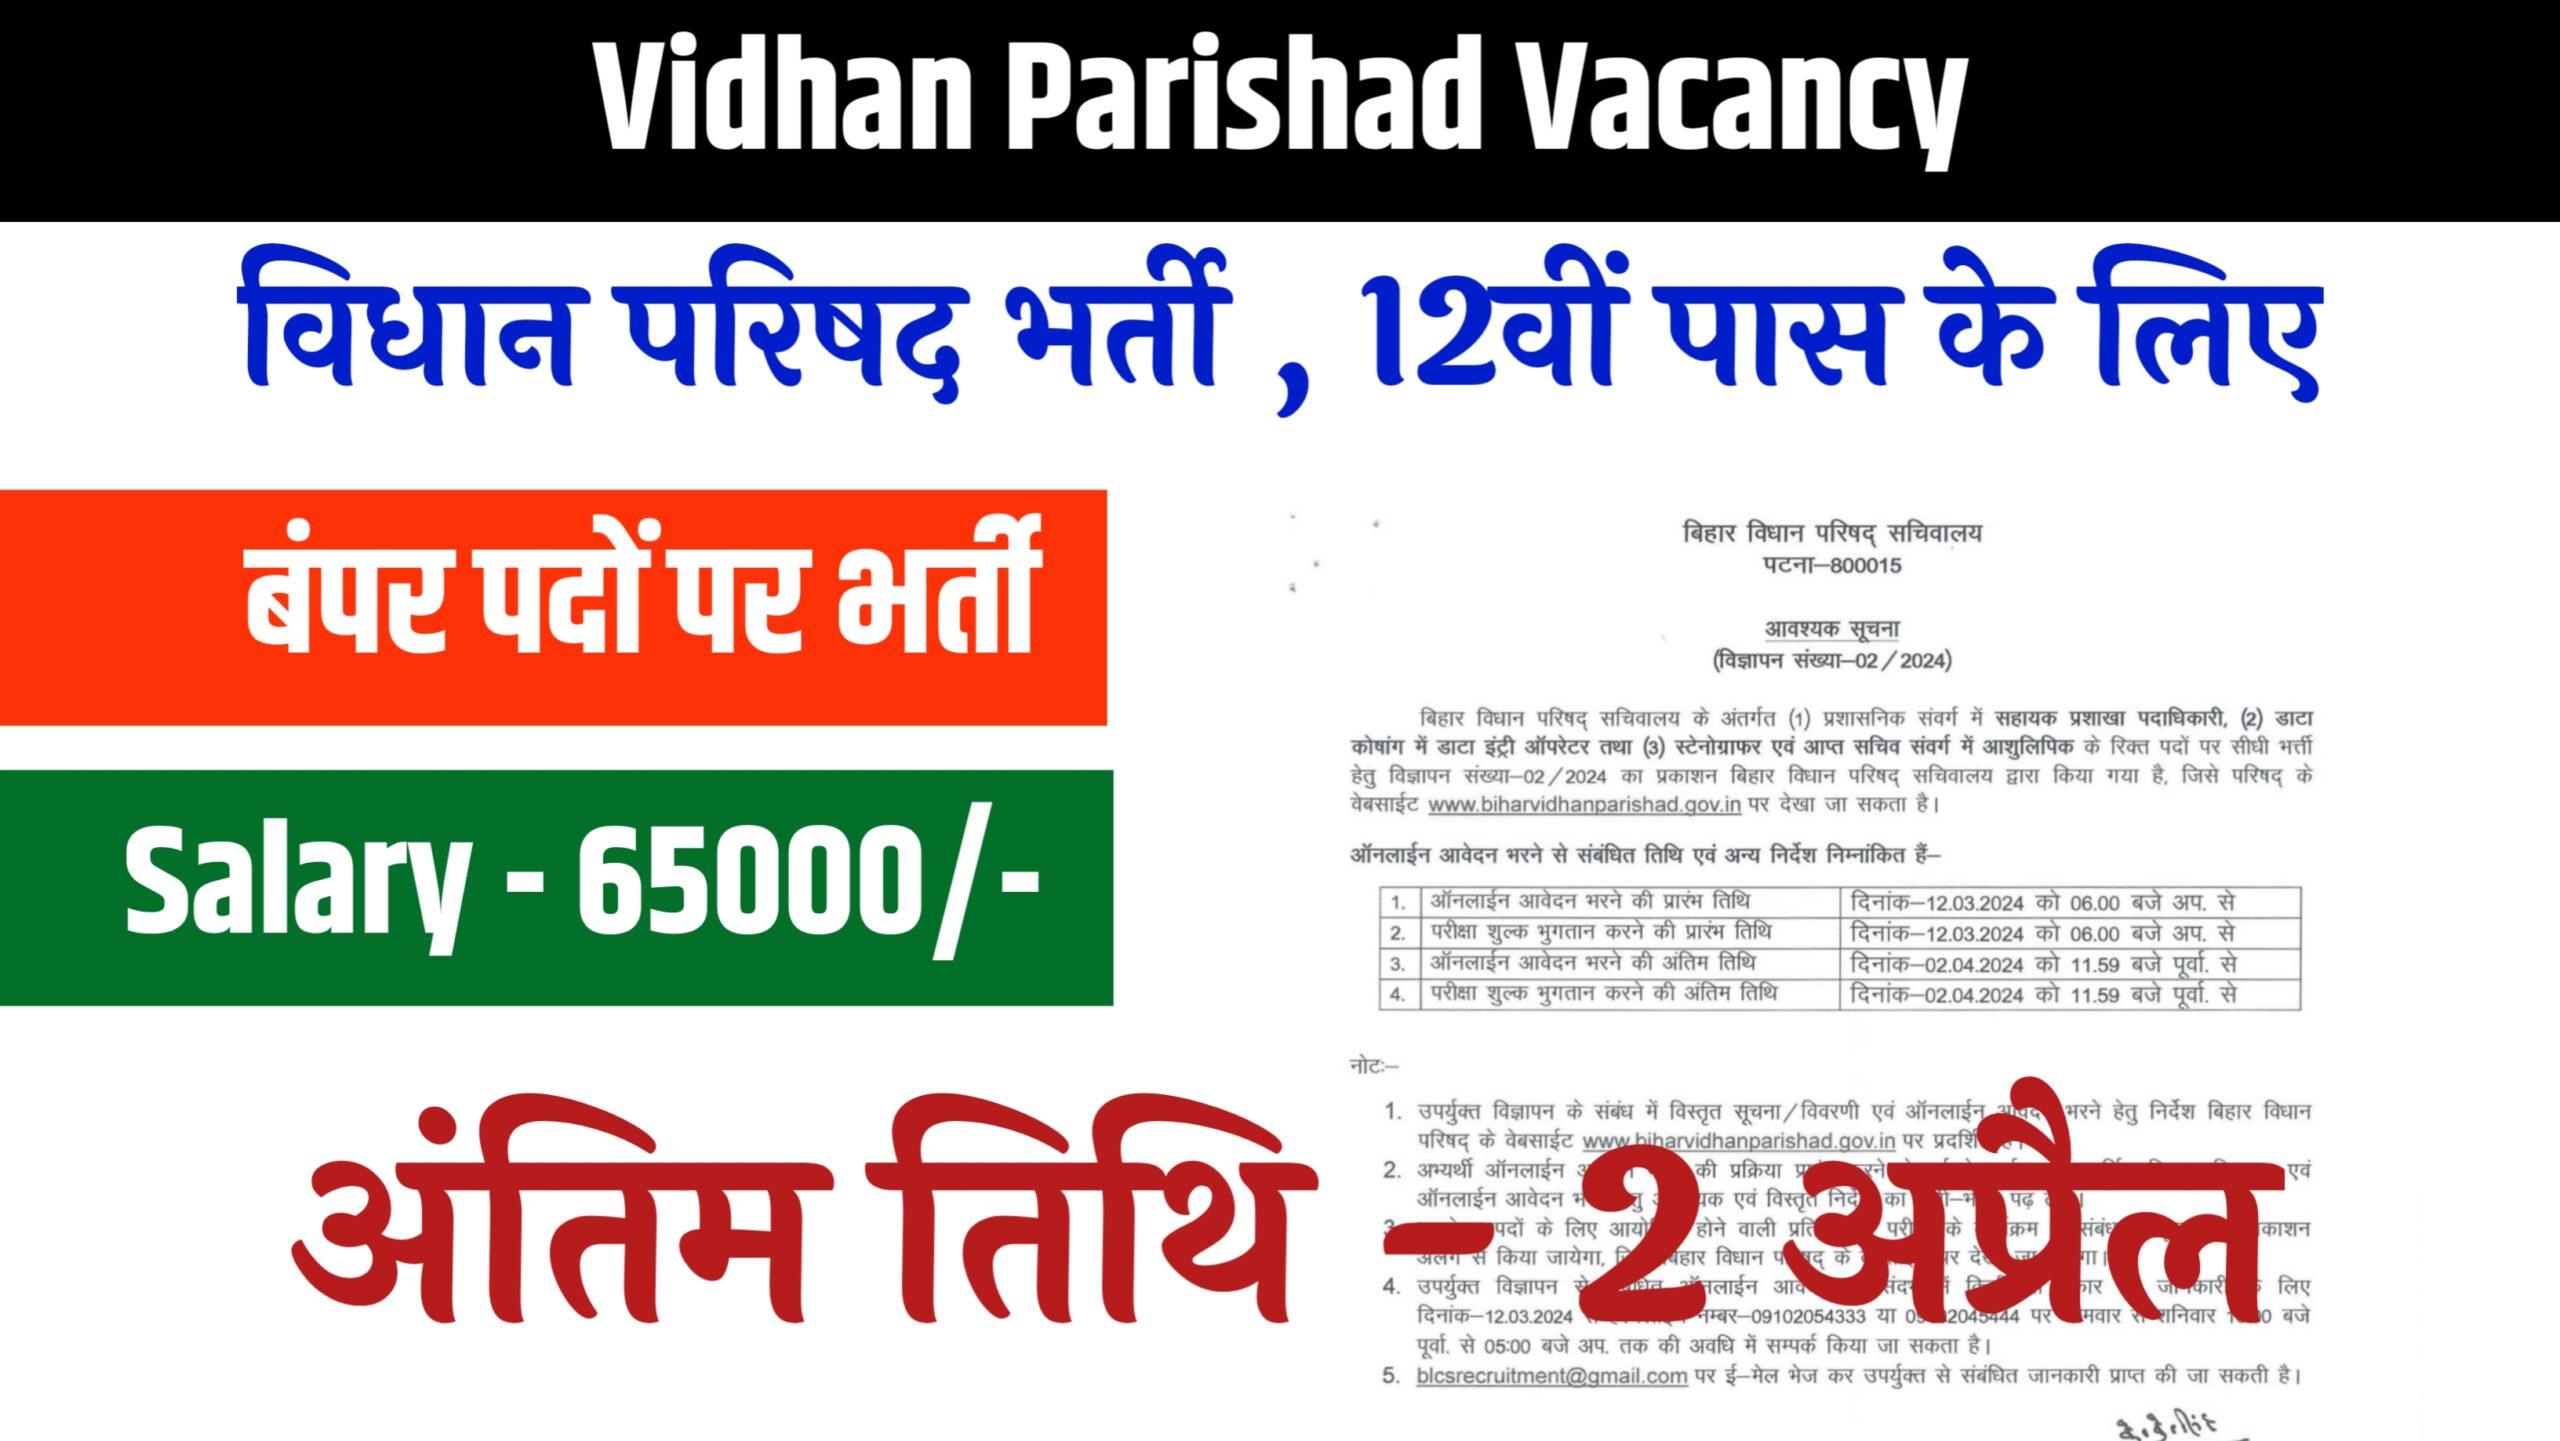 Vidhan Parishad Vacancy